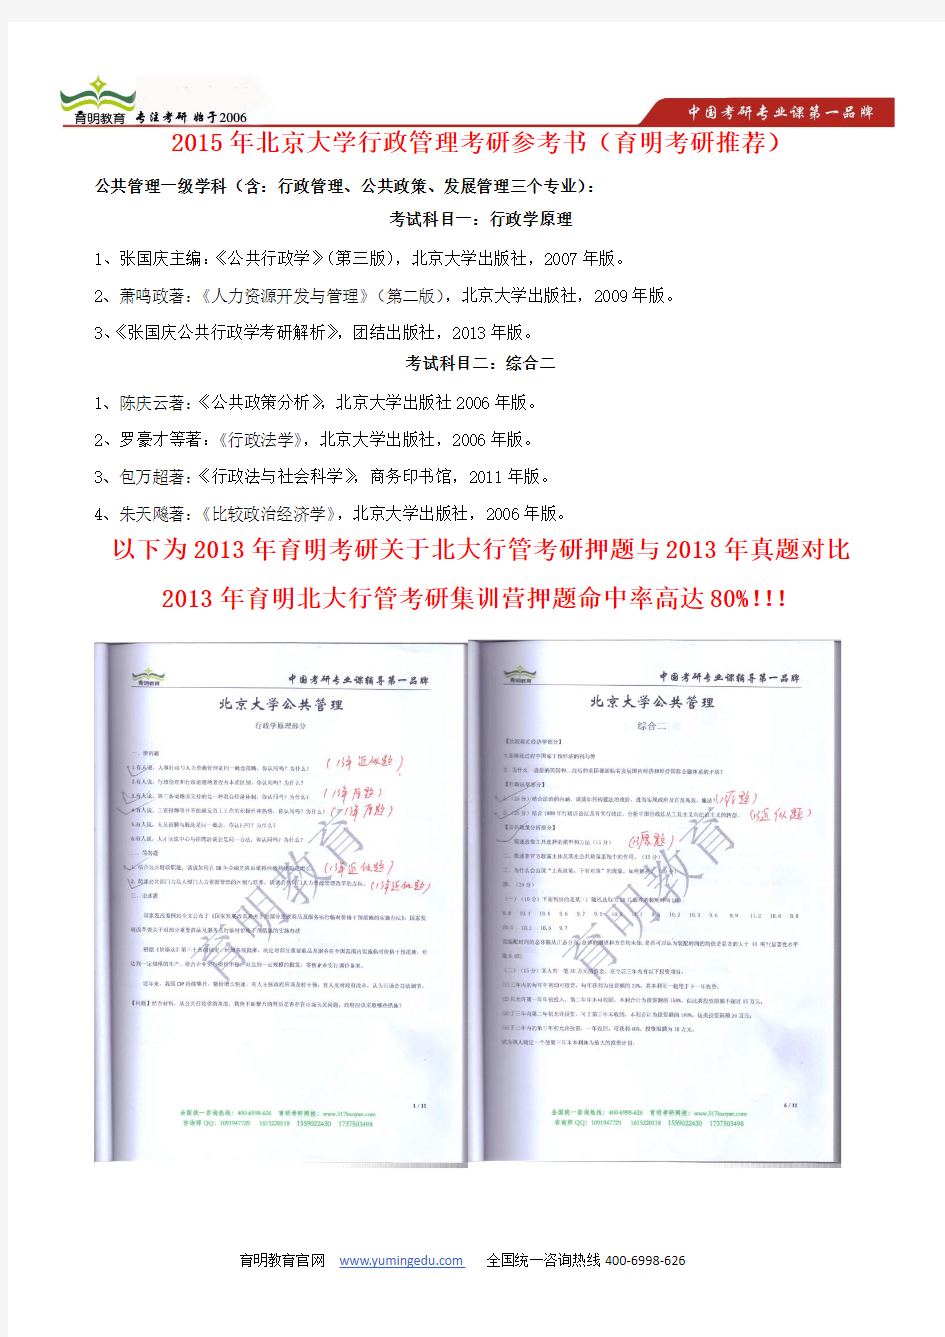 2011年北京大学行政管理考研真题及答案解析—育明考研